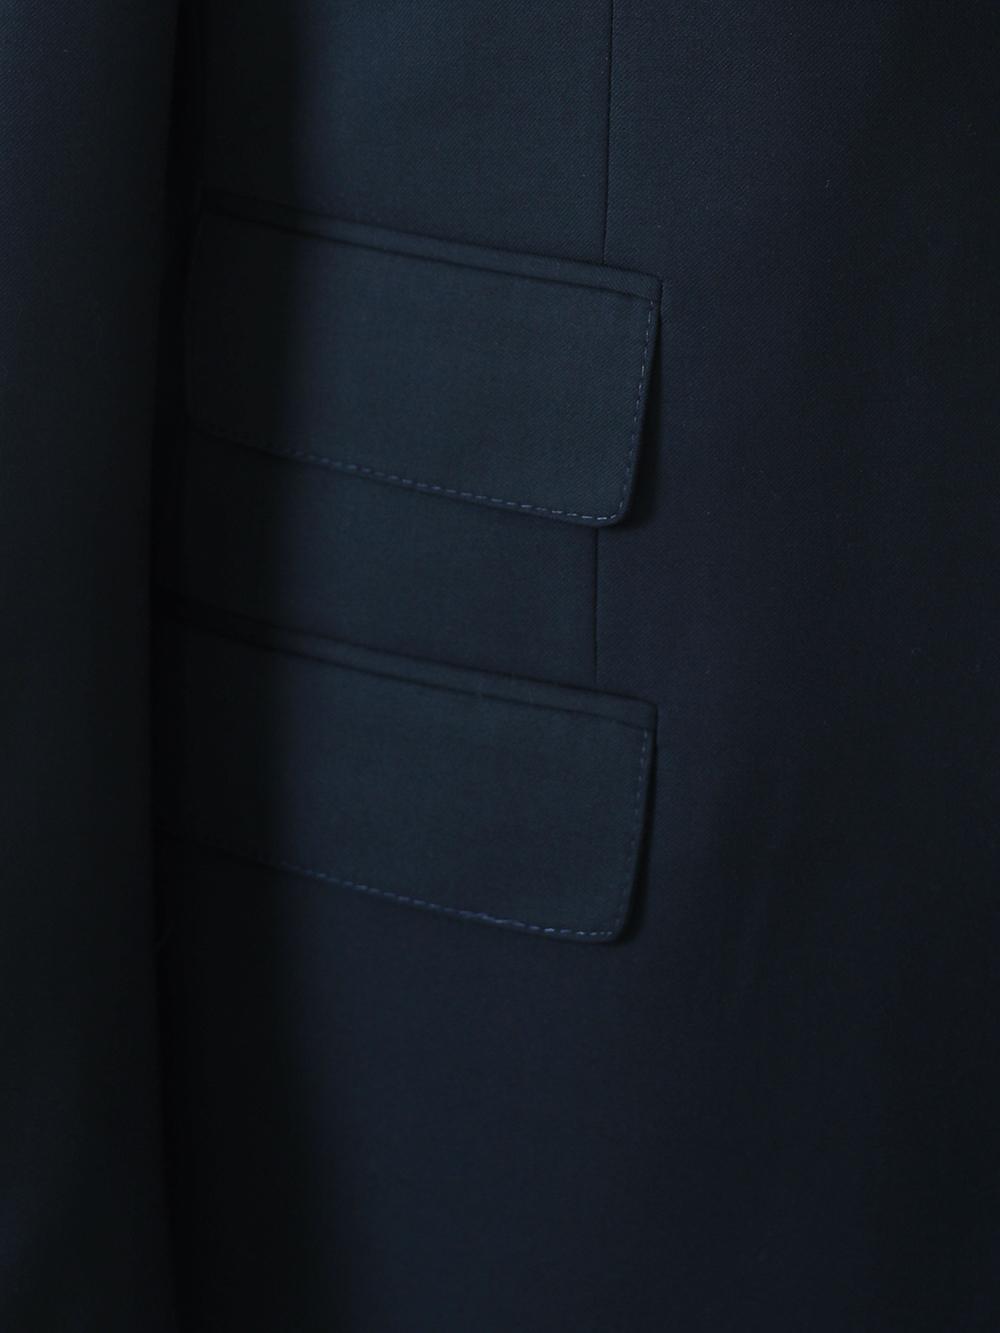 Davion Blue Set Blazer Linen Suit